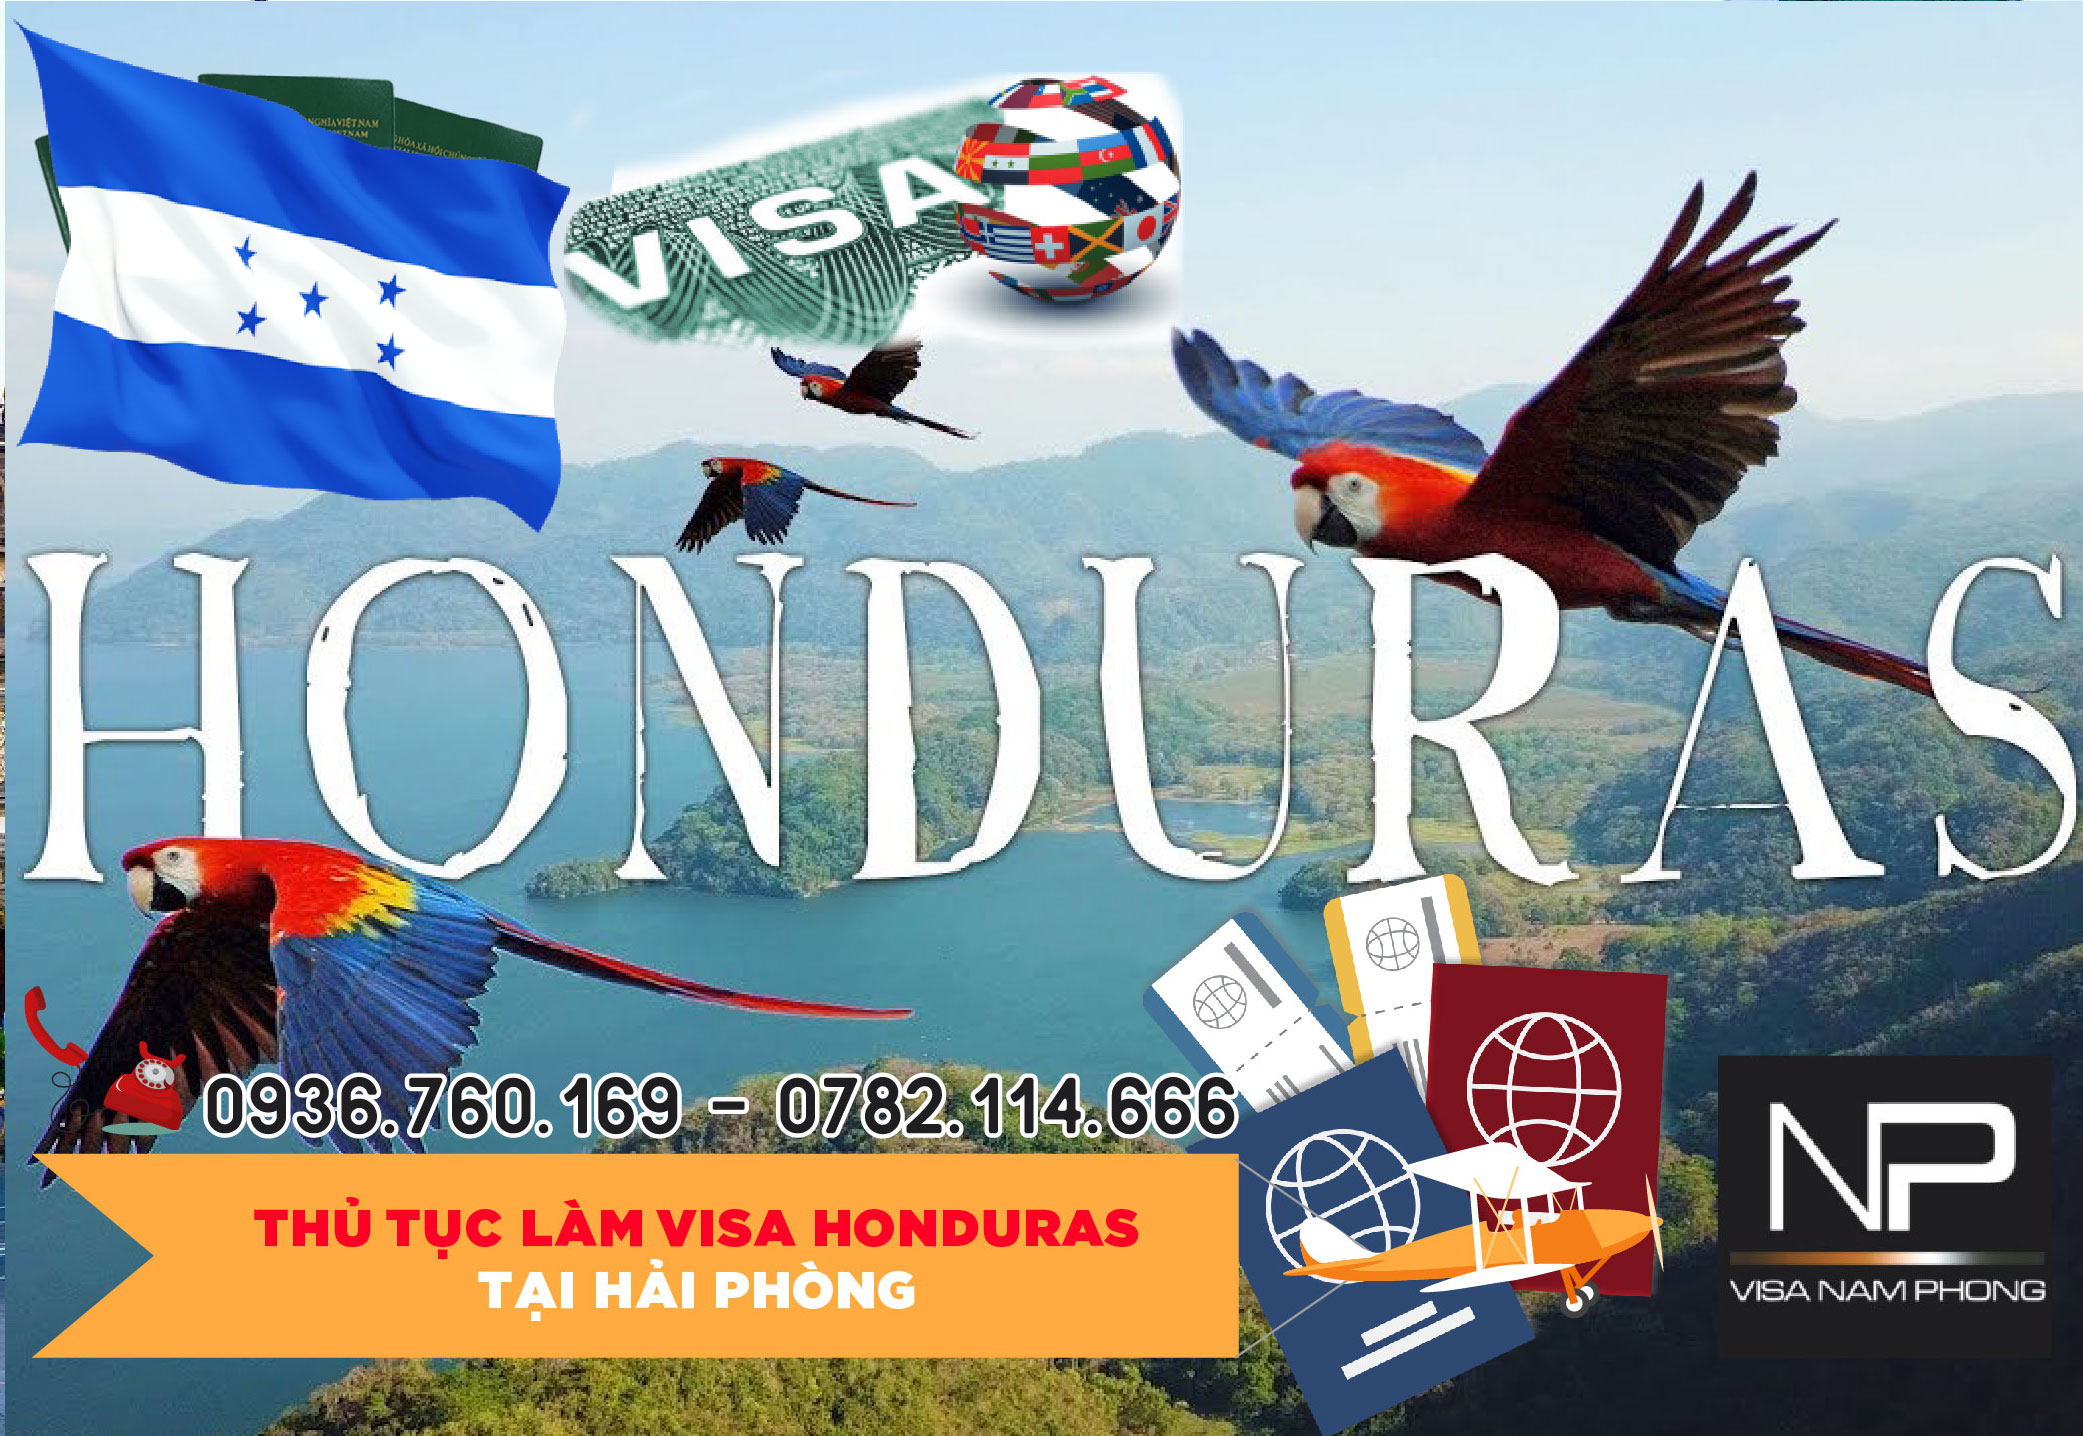 Thủ tục làm visa Honduras tại Hải Phòng